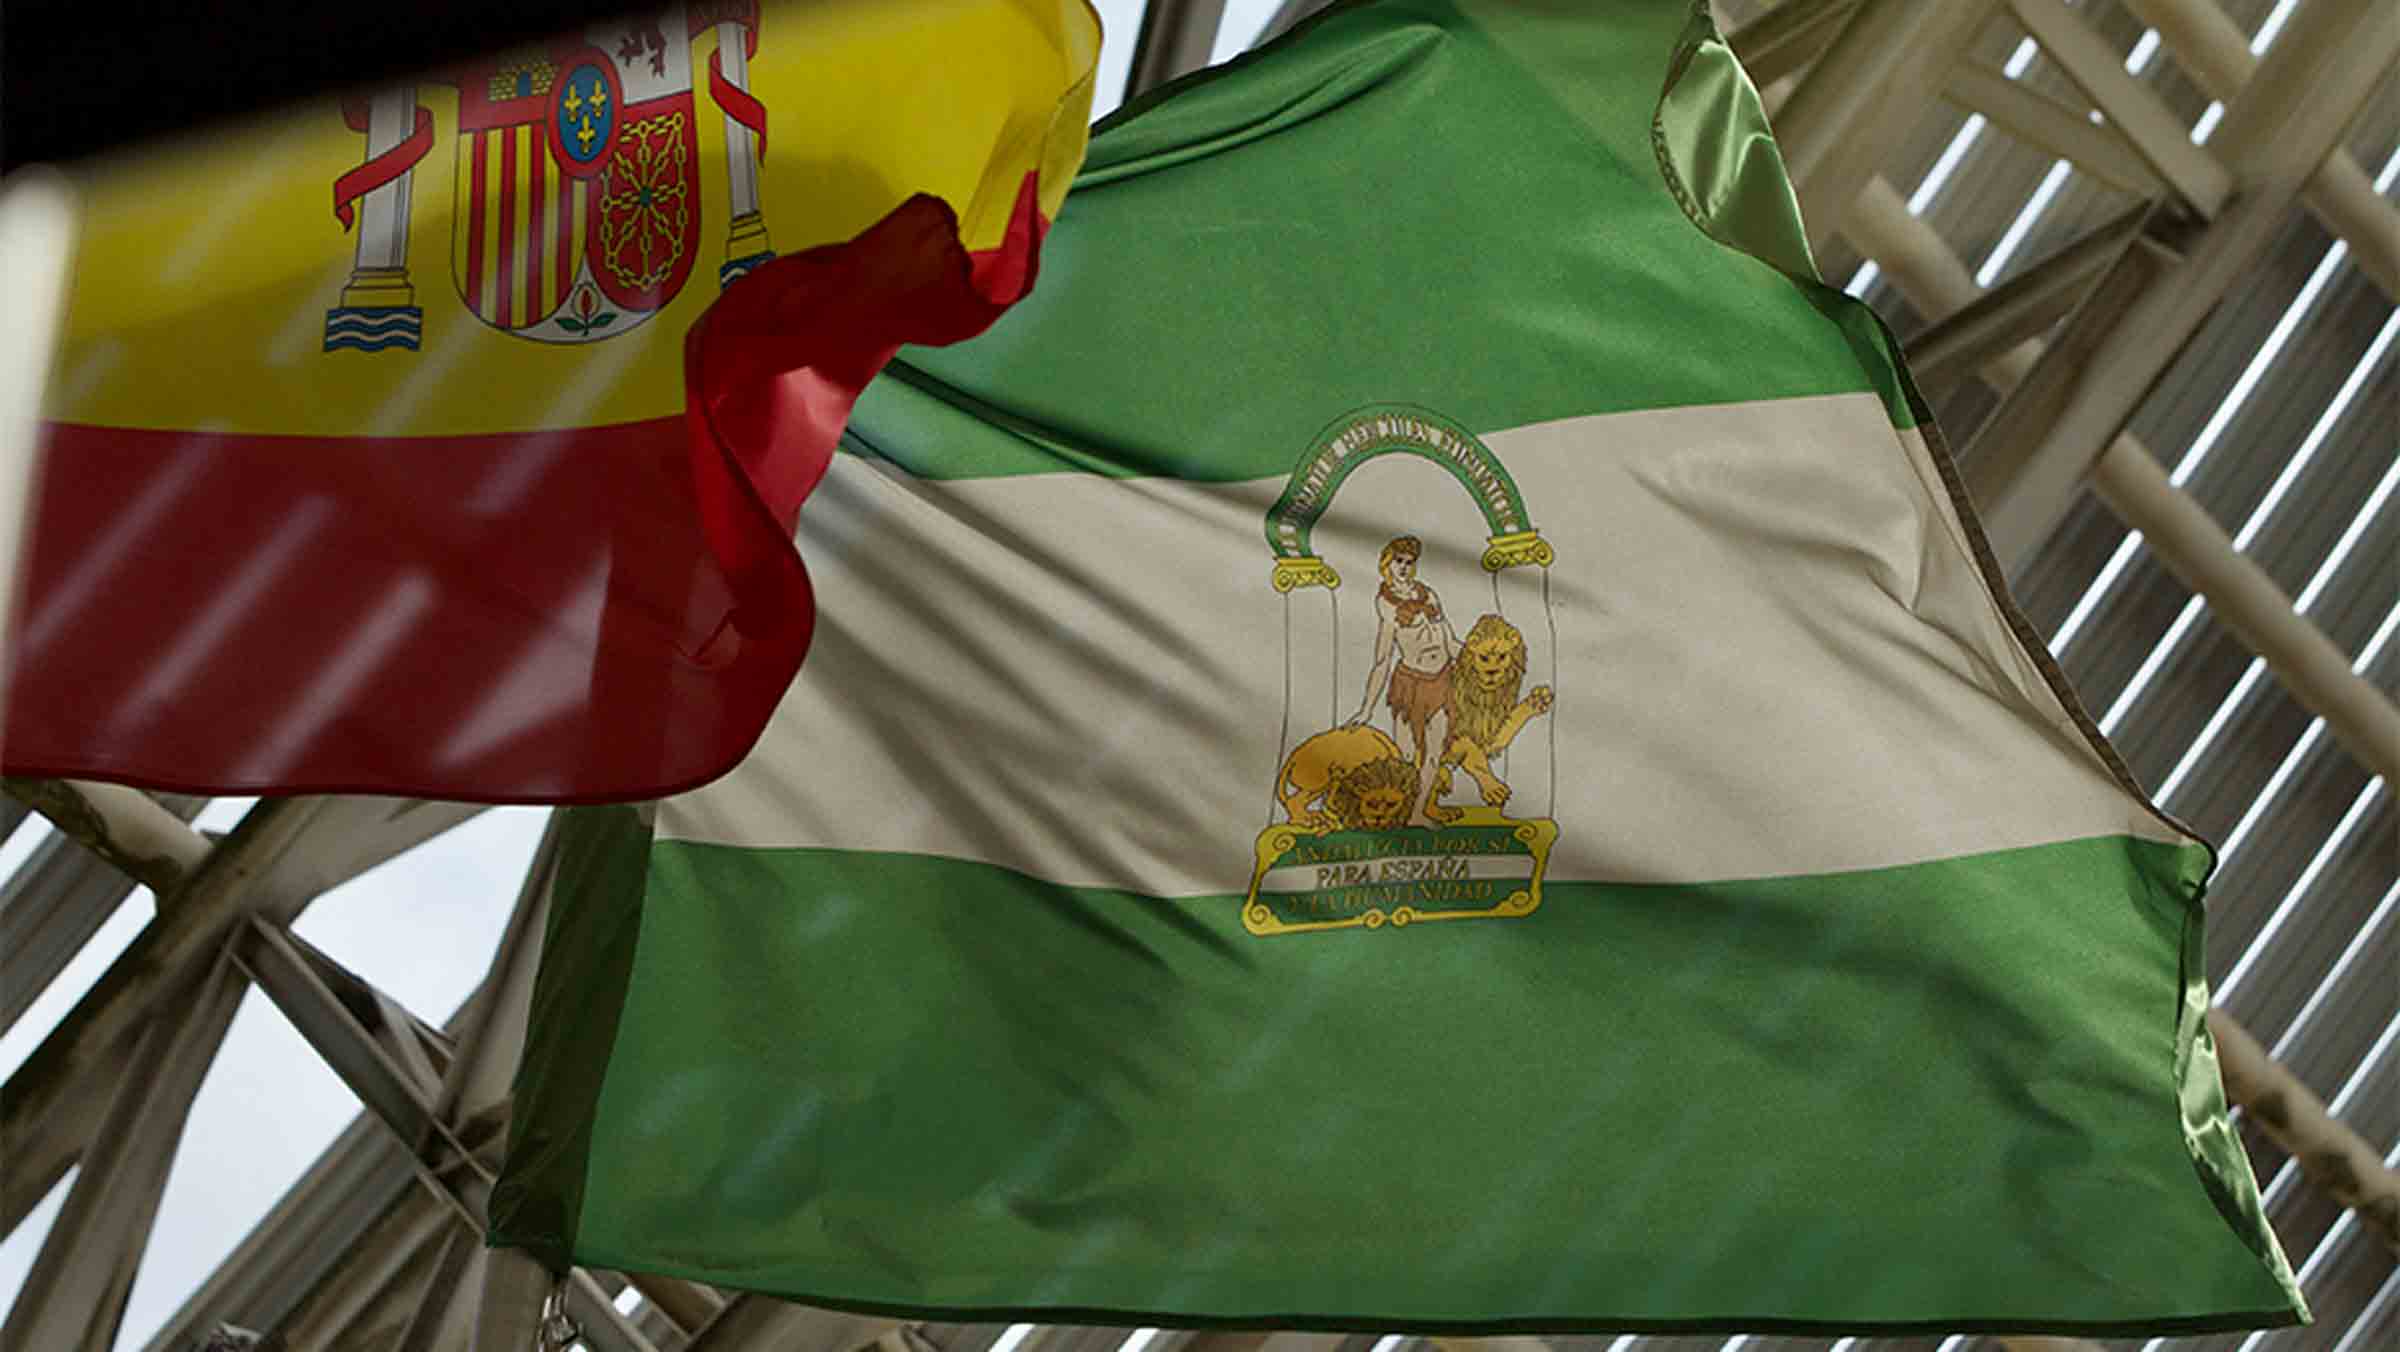 El Hércules gaditano que inspiró el escudo de la bandera blanca y verde